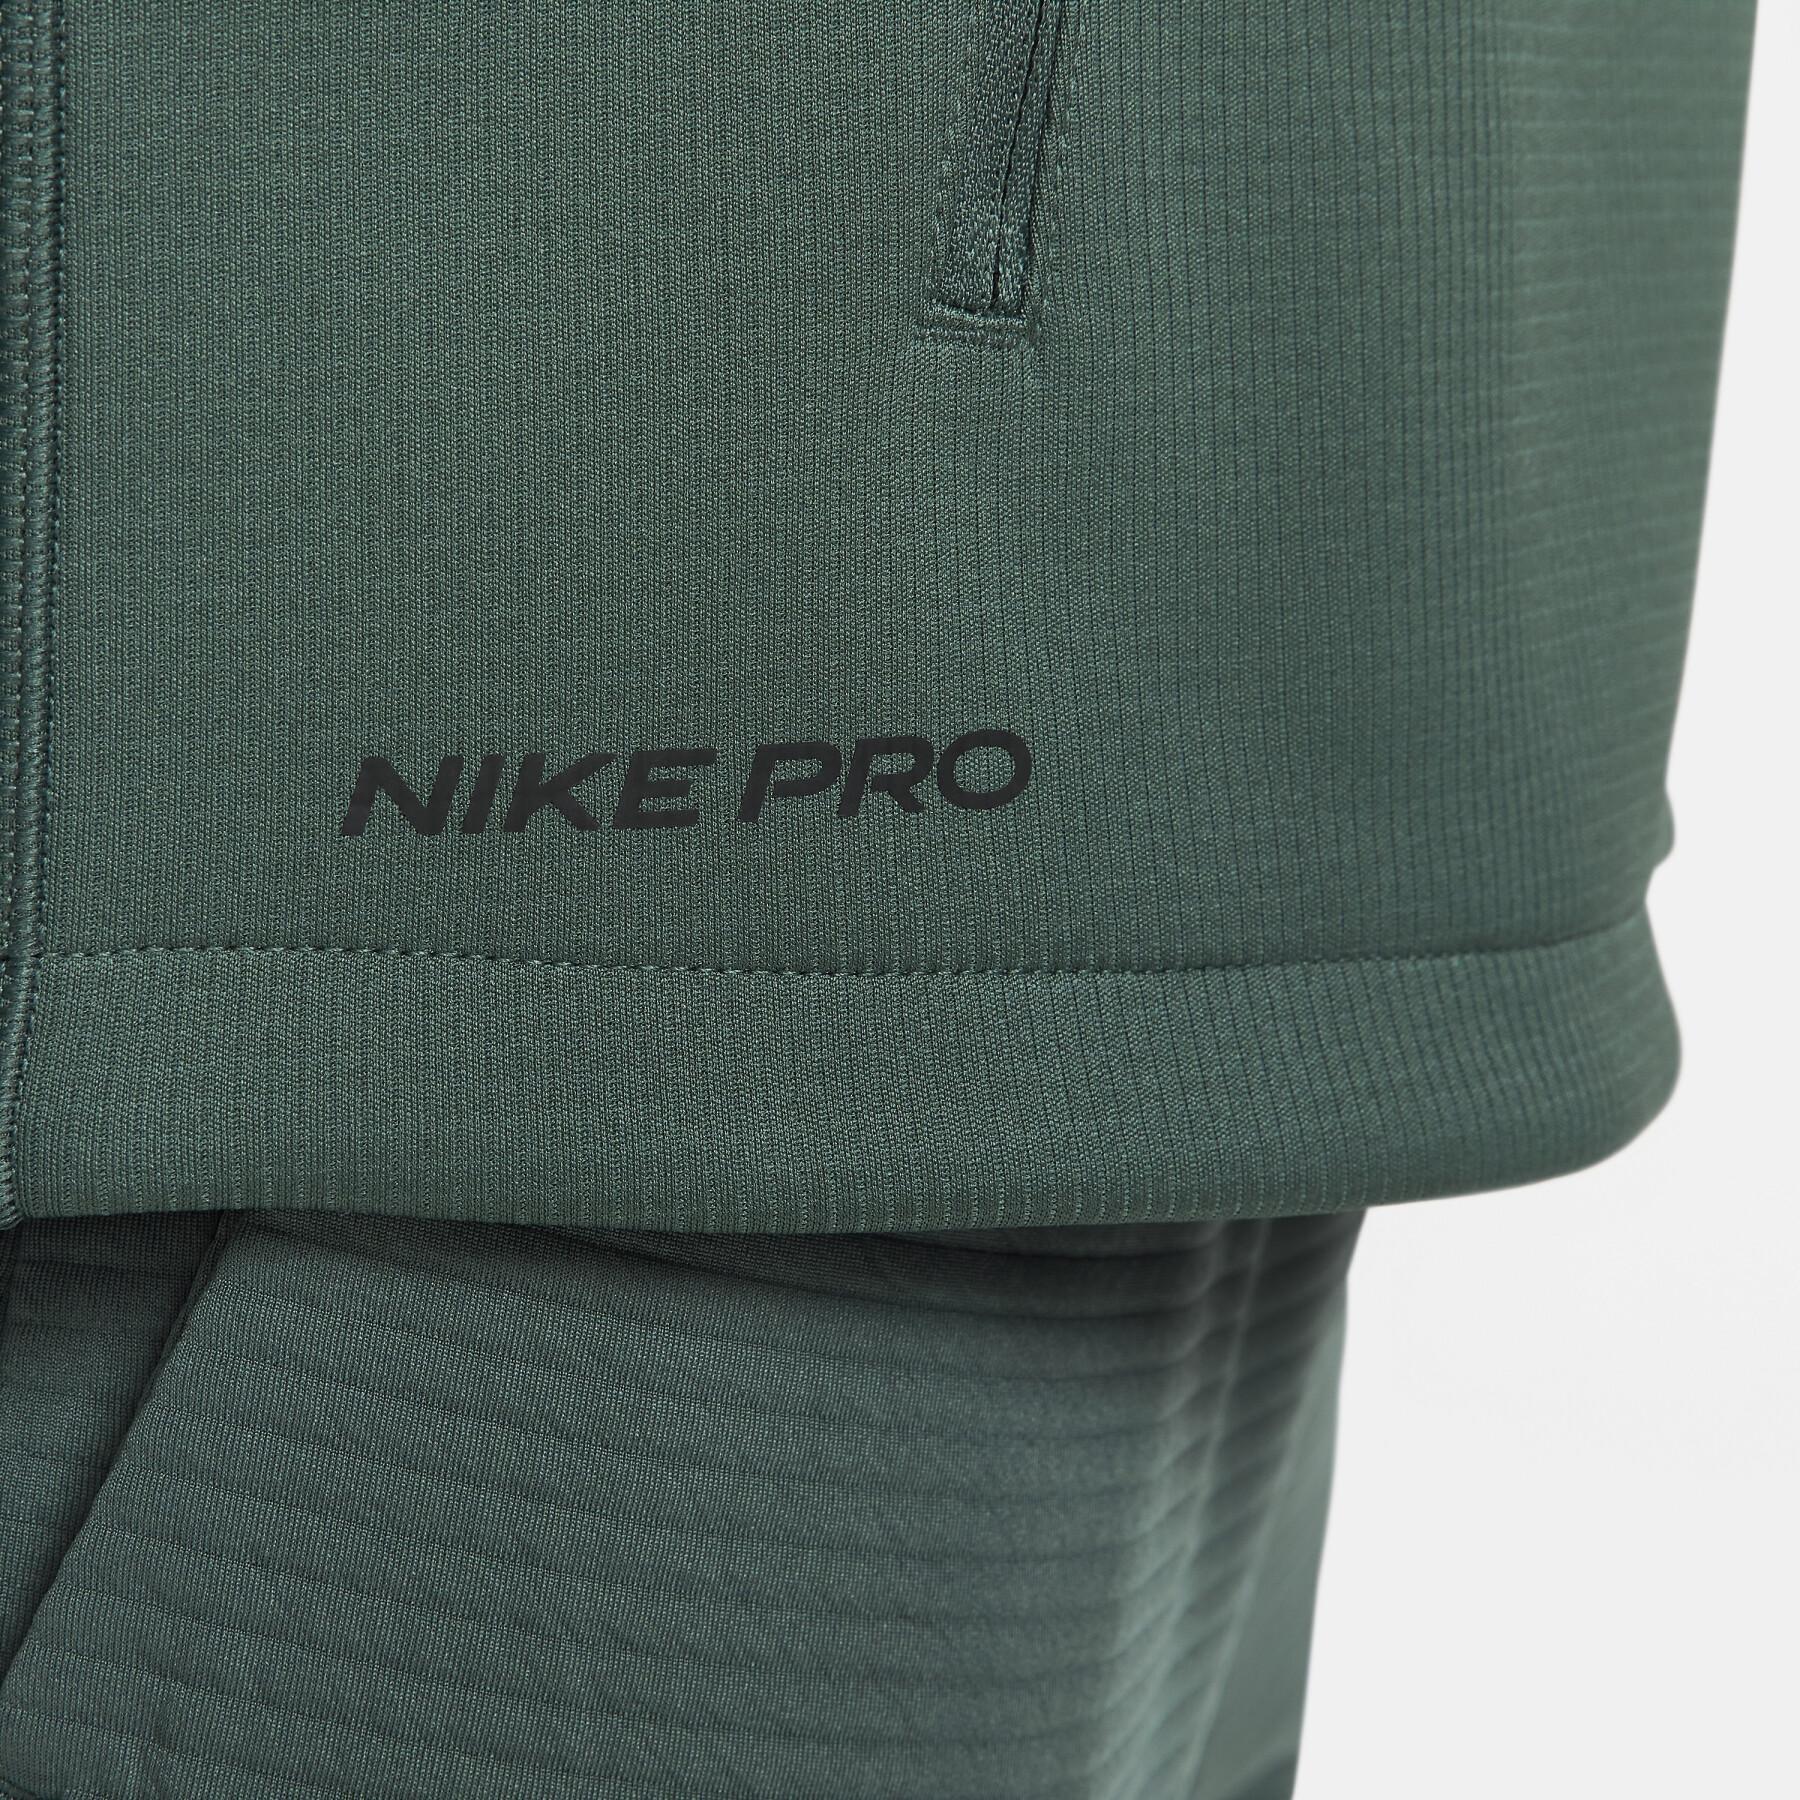 Giacca della tuta con 1/2 zip Nike Therma-Fit SPHR